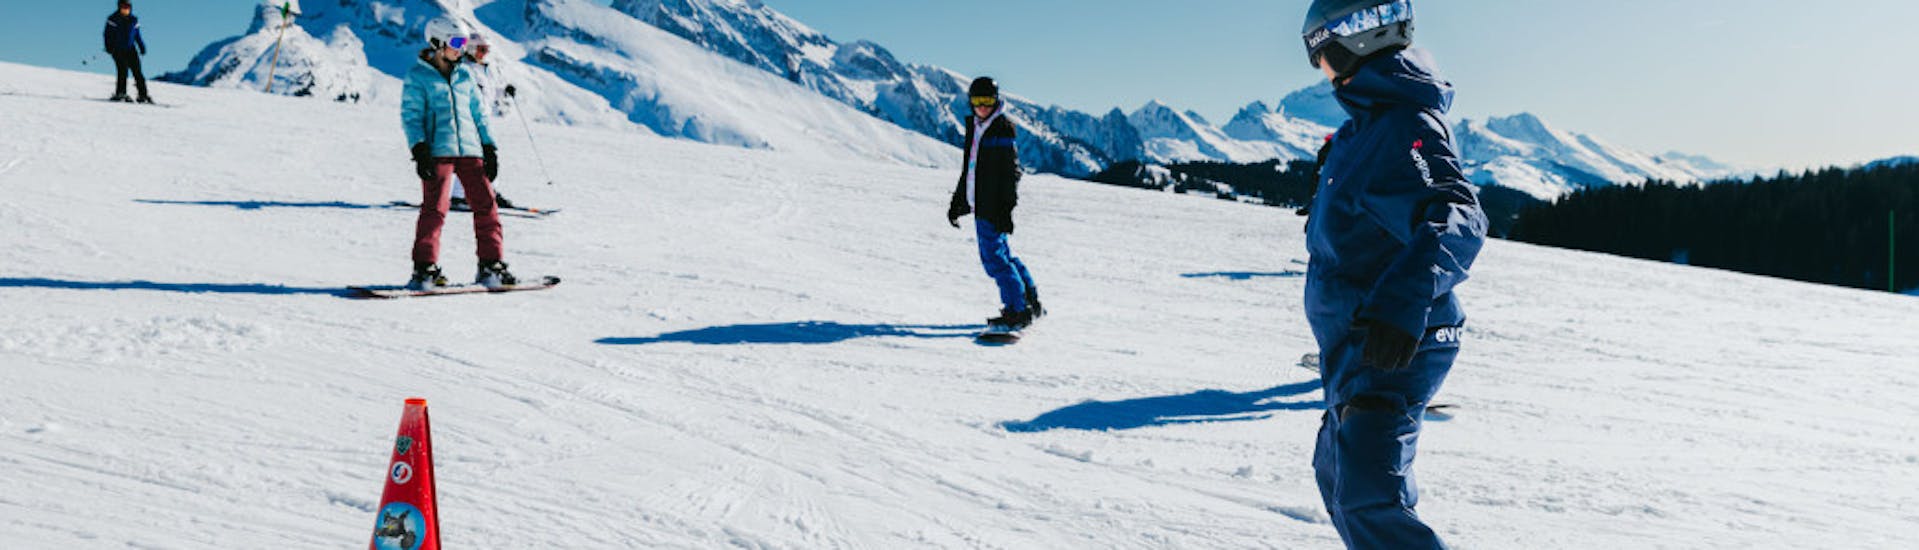 Snowboardlessen vanaf 8 jaar - beginners met Evolution 2 Saint-Gervais.